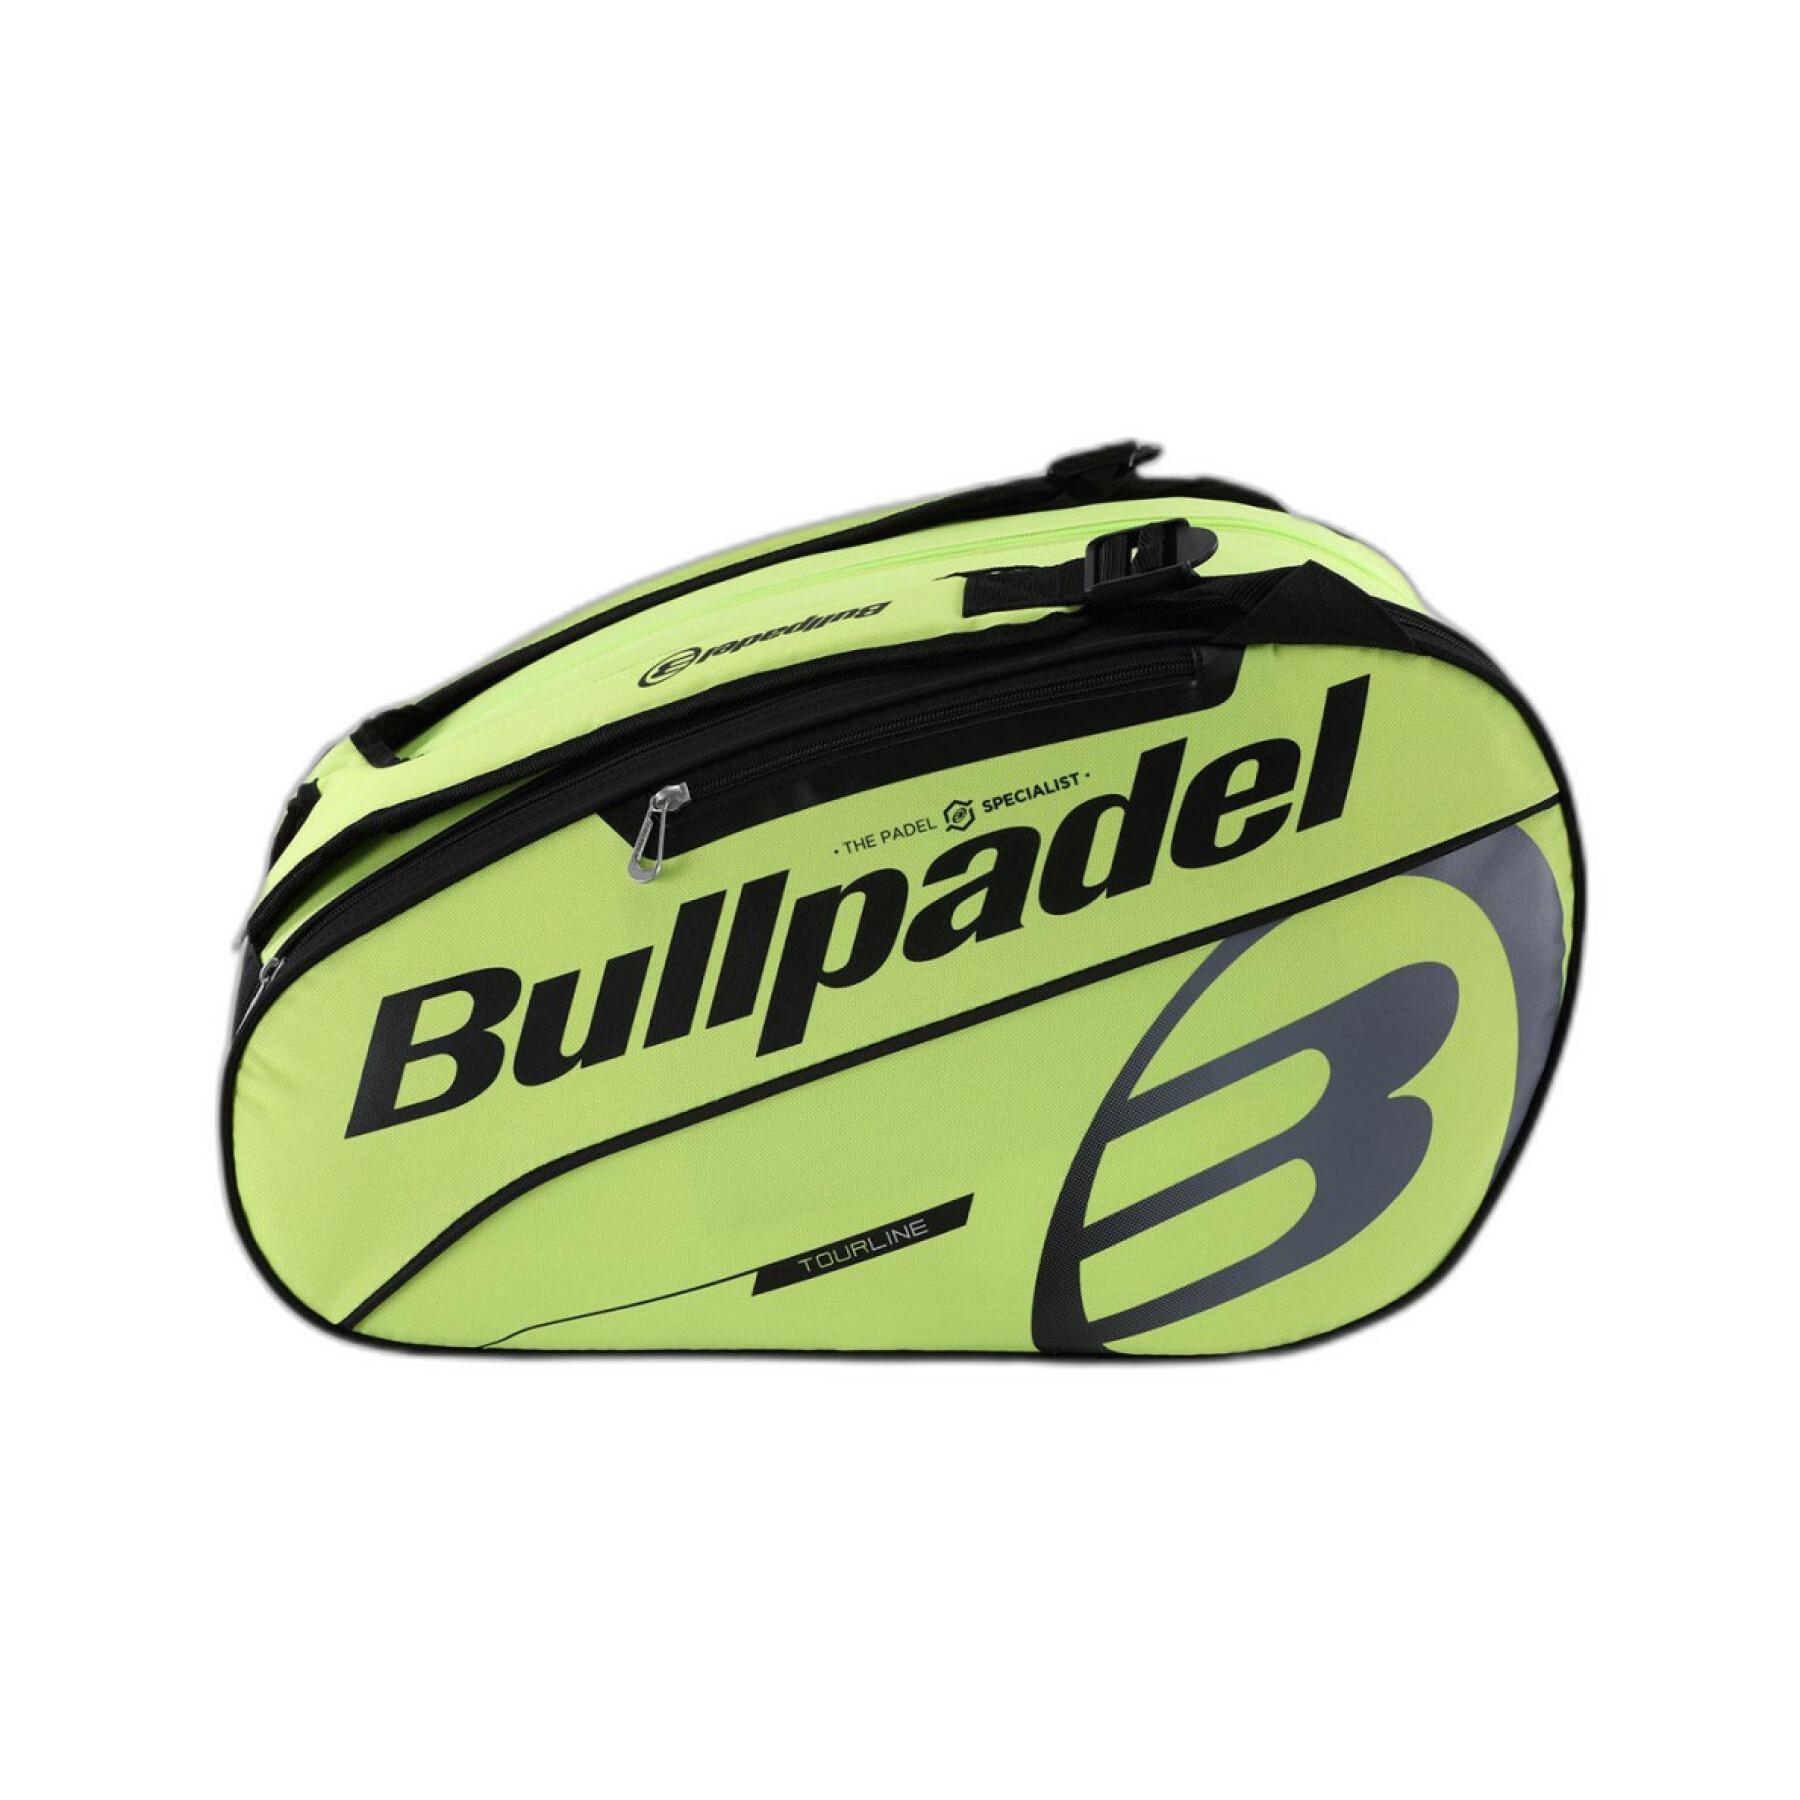 Paddle bag Bullpadel Bpp22015 Tour